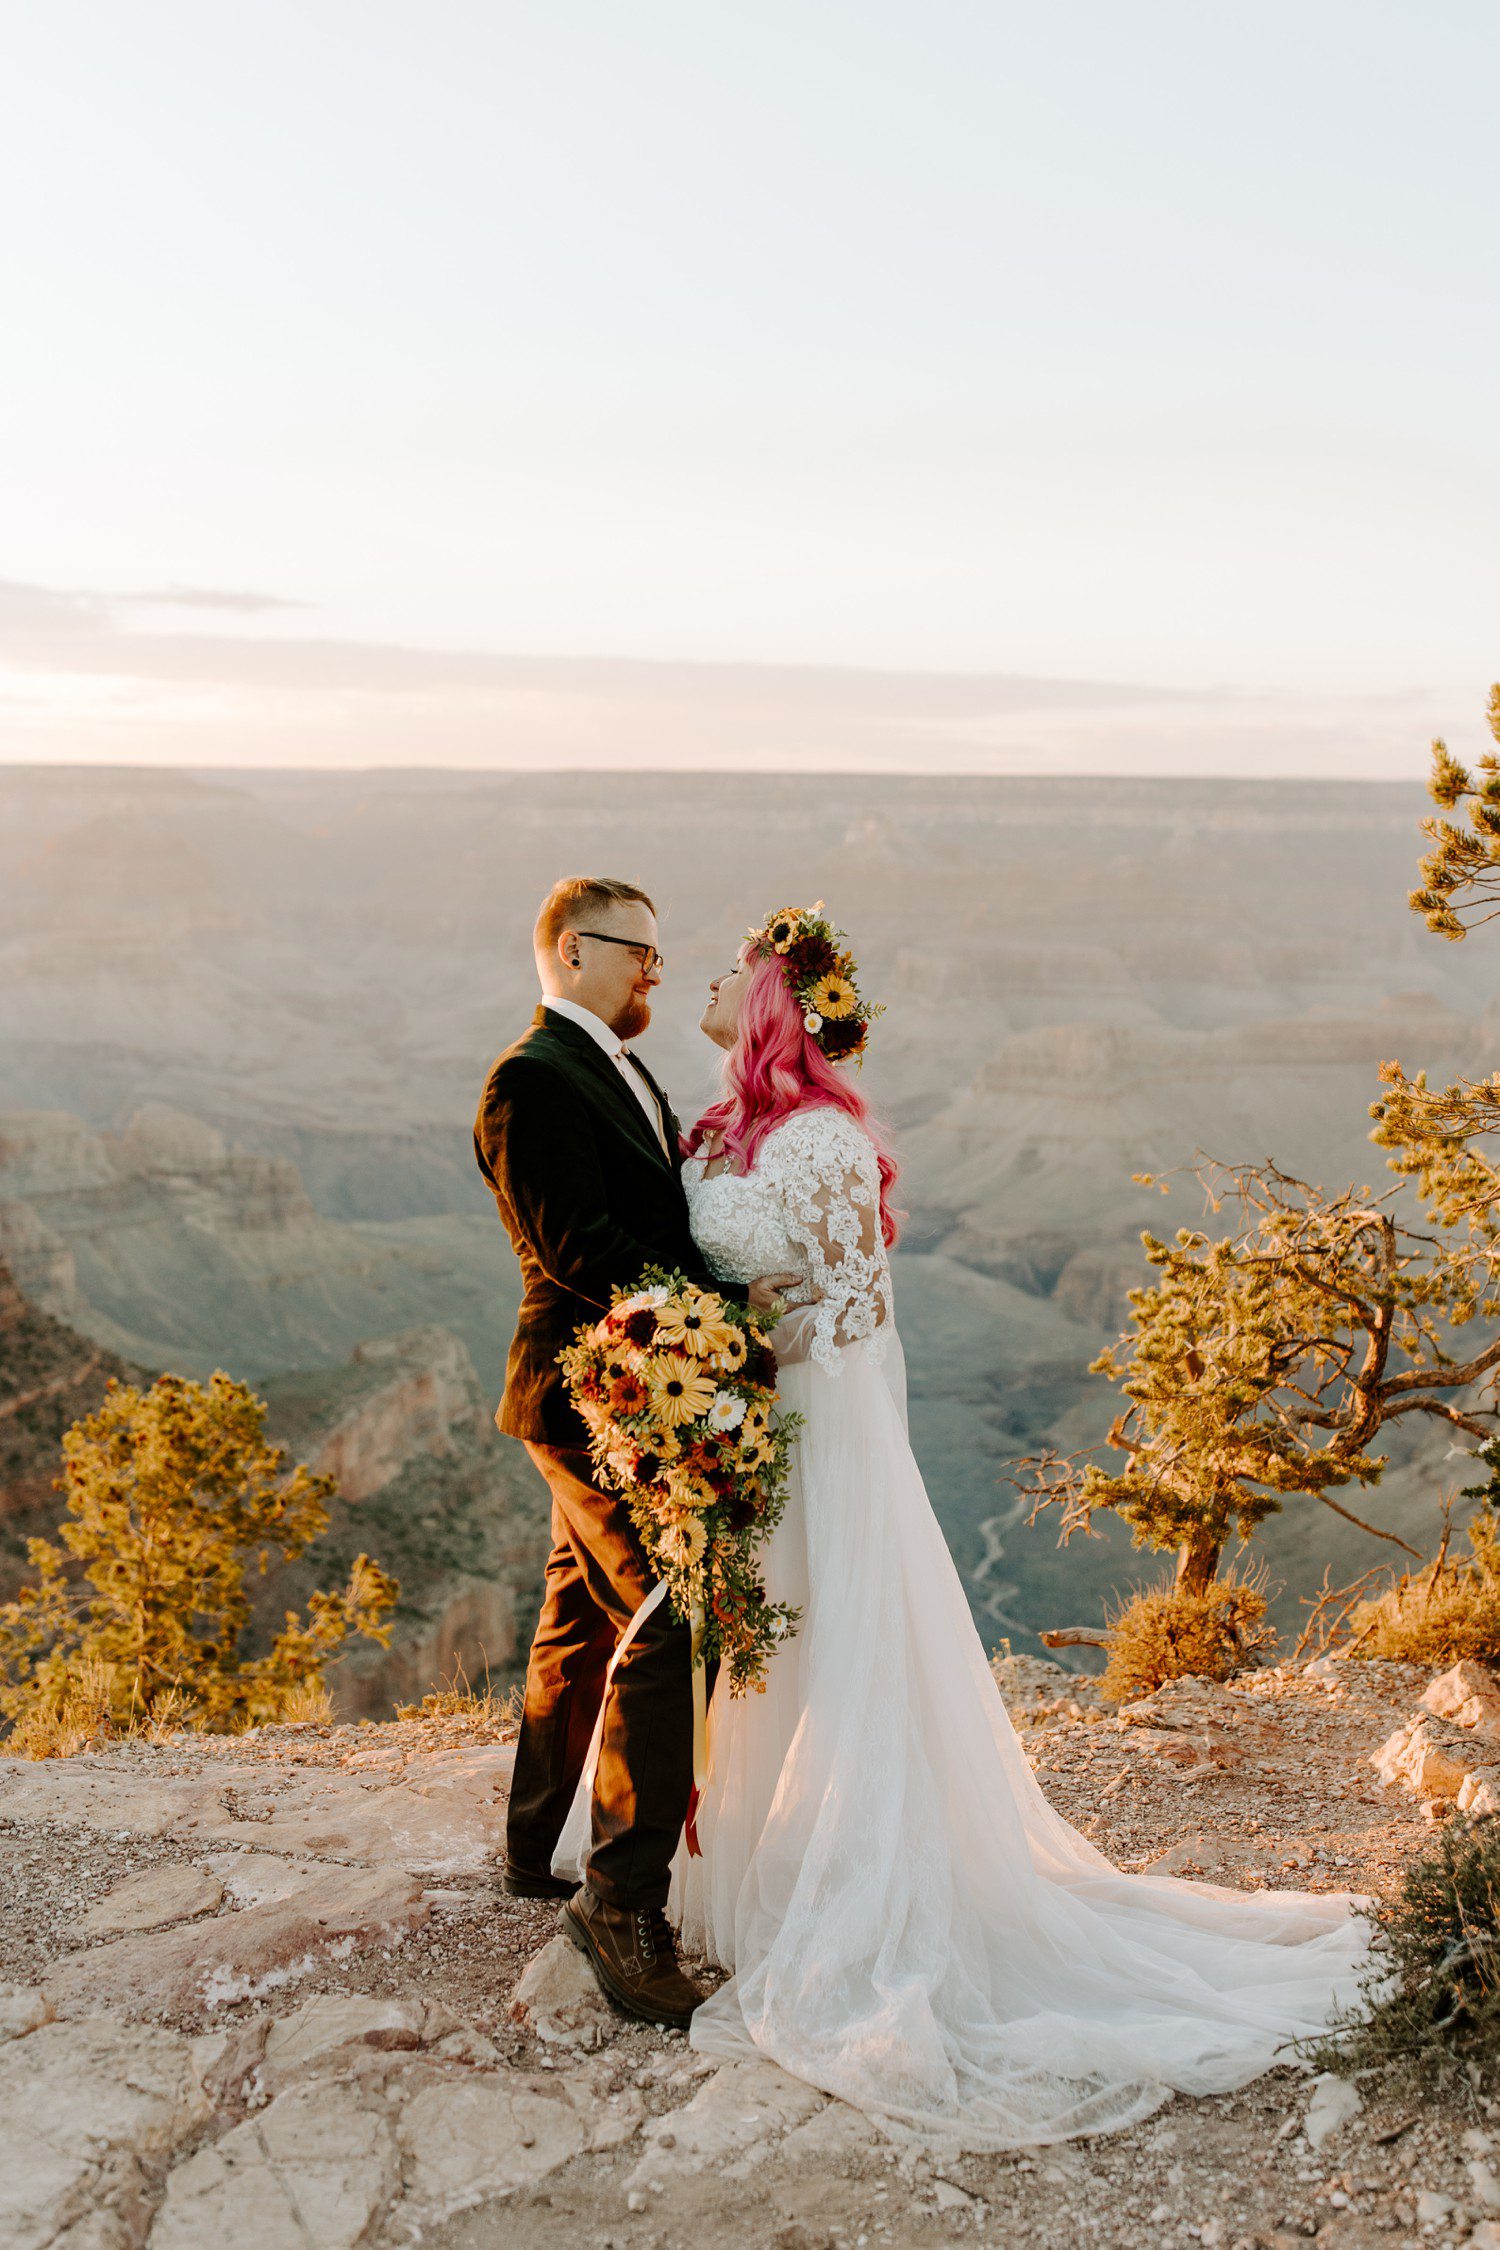 Wedding photos at the Grand Canyon